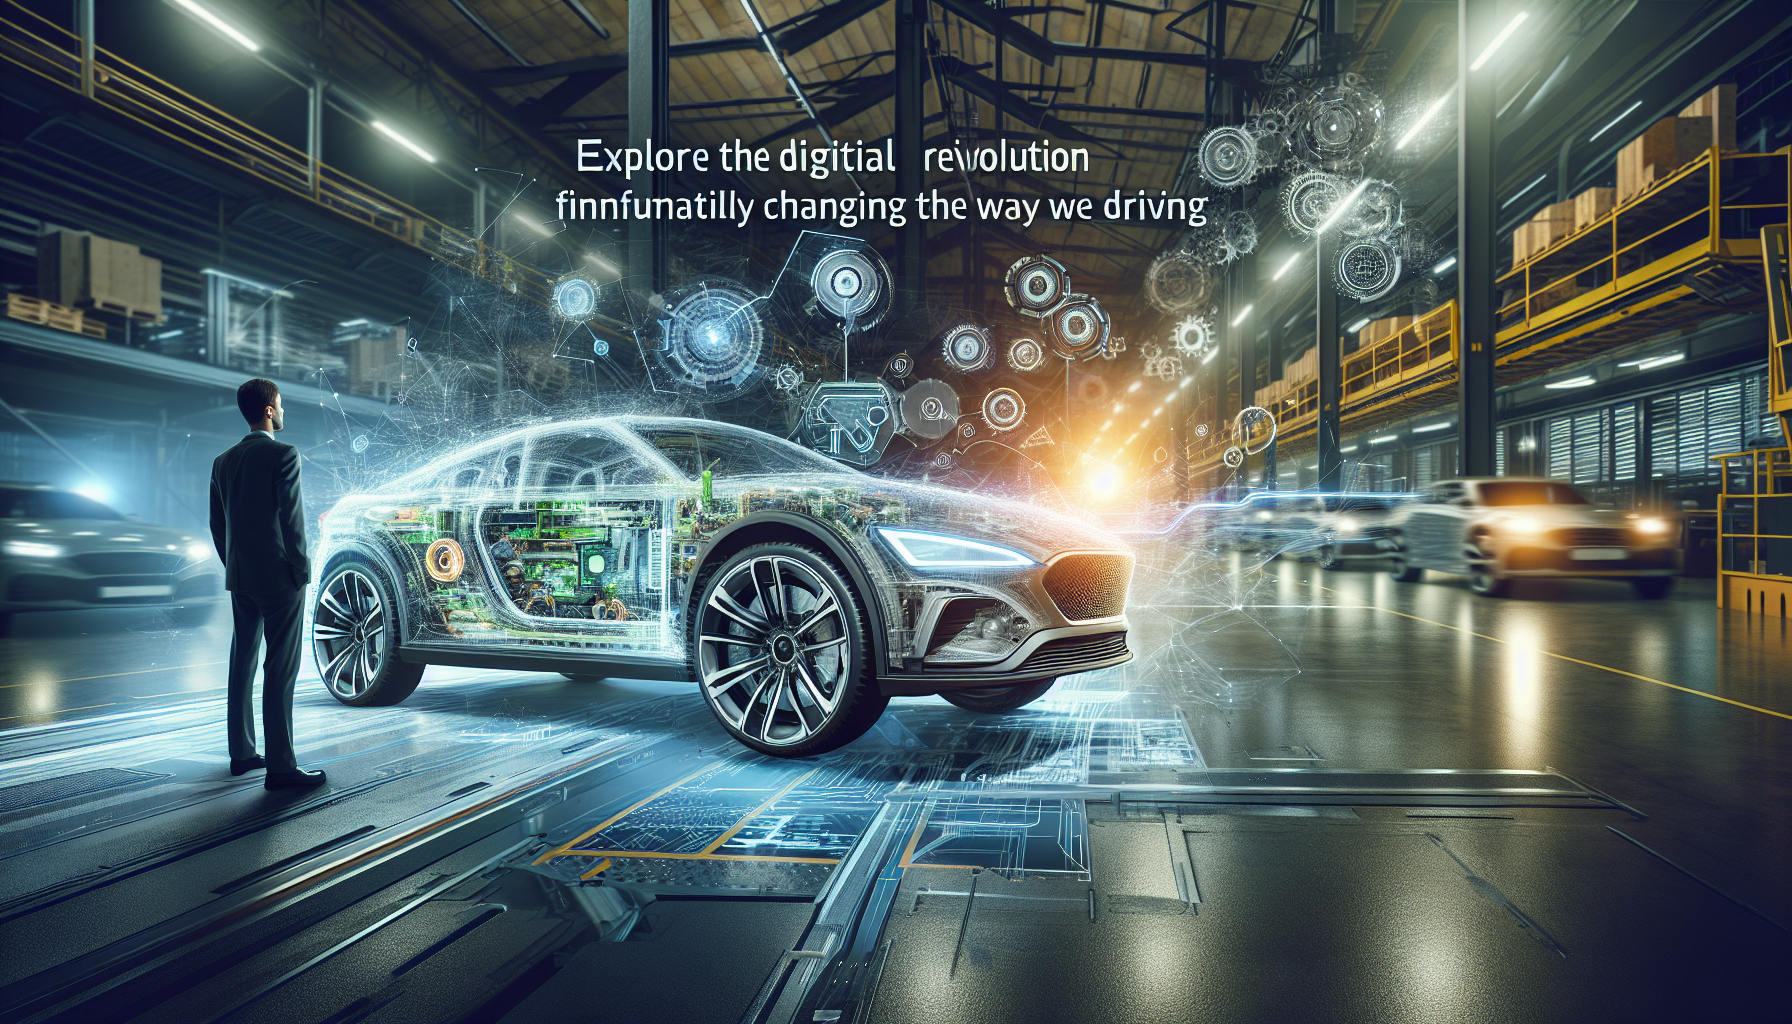 descubra como a tecnologia digital está revolucionando a indústria automotiva com a Hyundai. inovações revolucionárias que ultrapassam os limites da condução e redefinem a experiência automóvel.